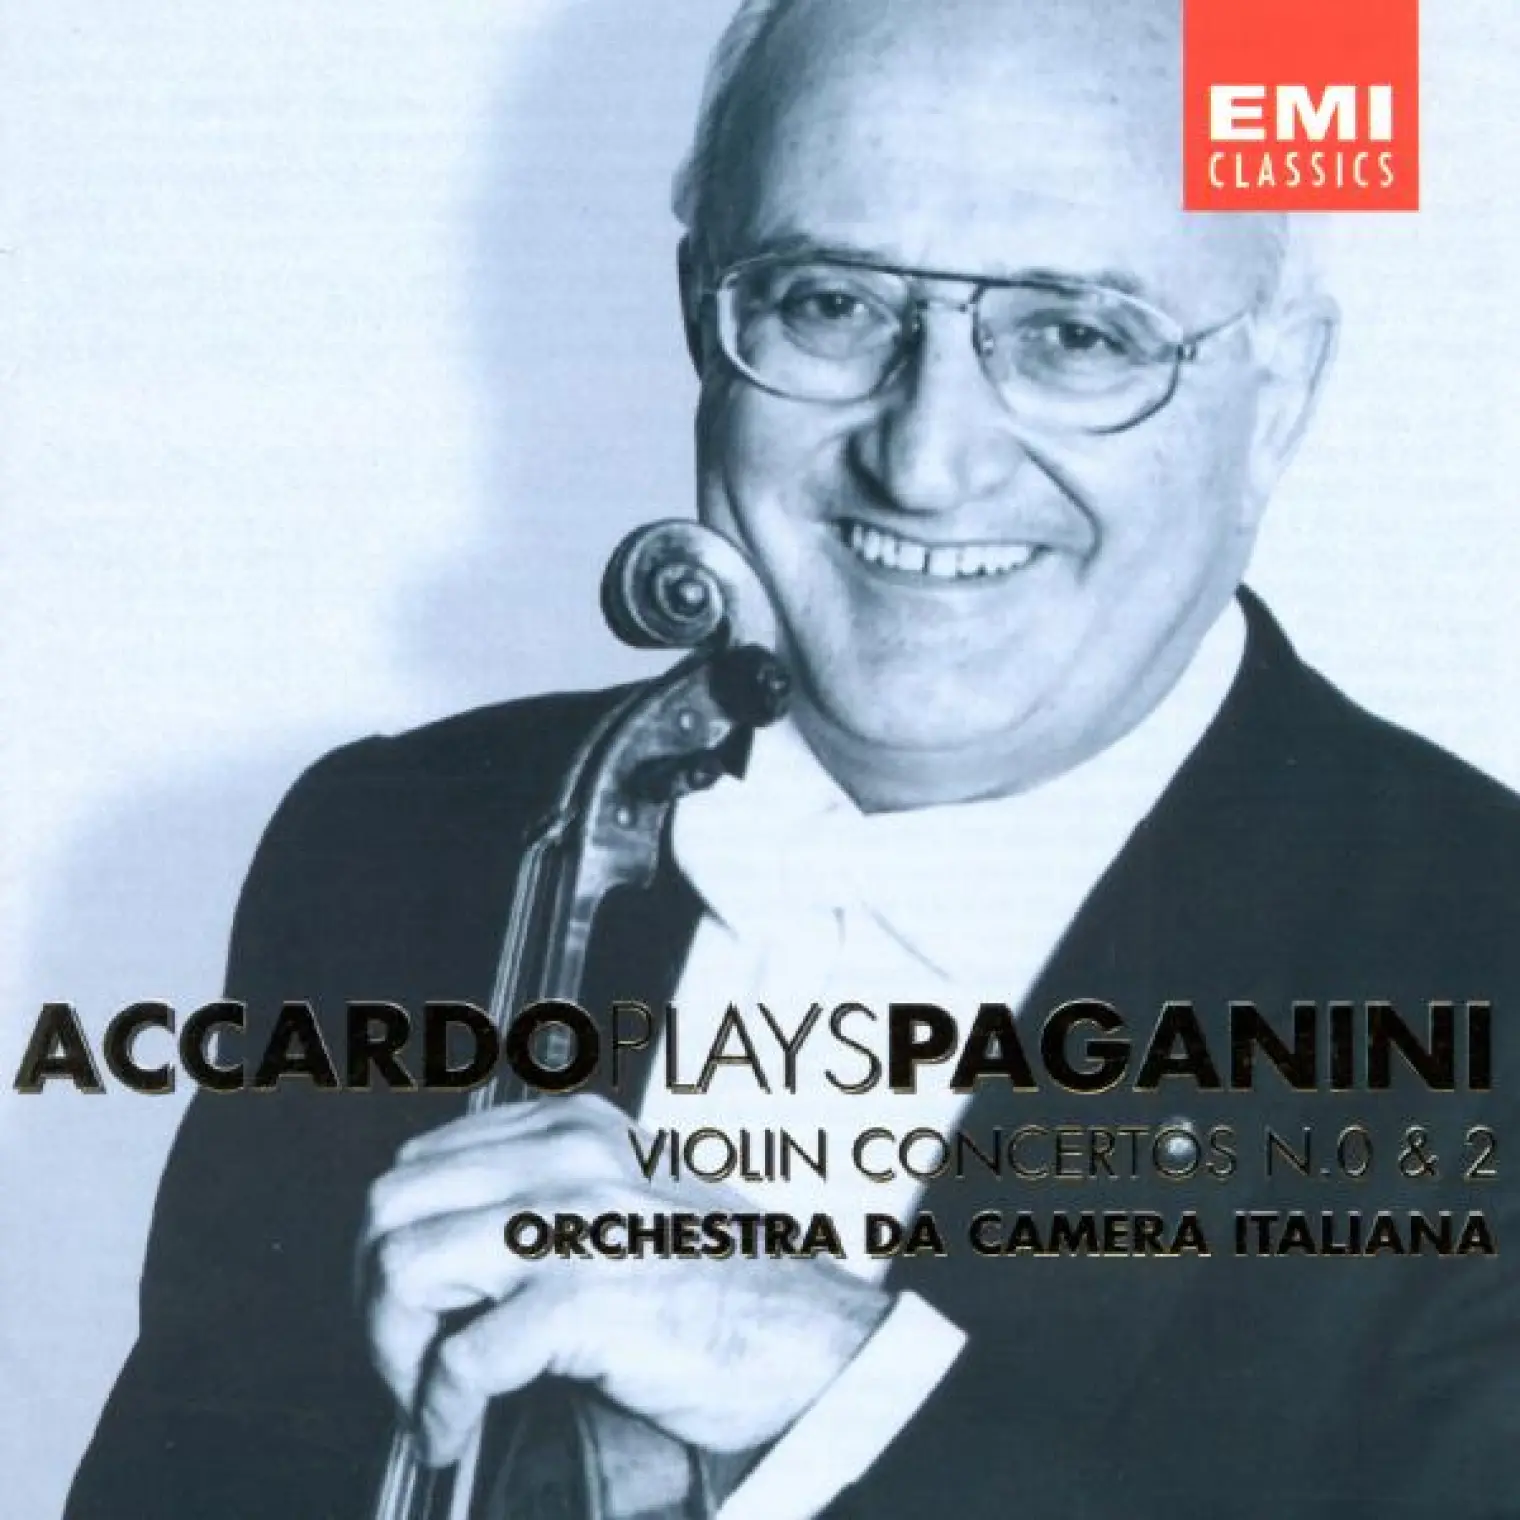 Accardo Plays Paganini - Vol. 1 -  Salvatore Accardo 